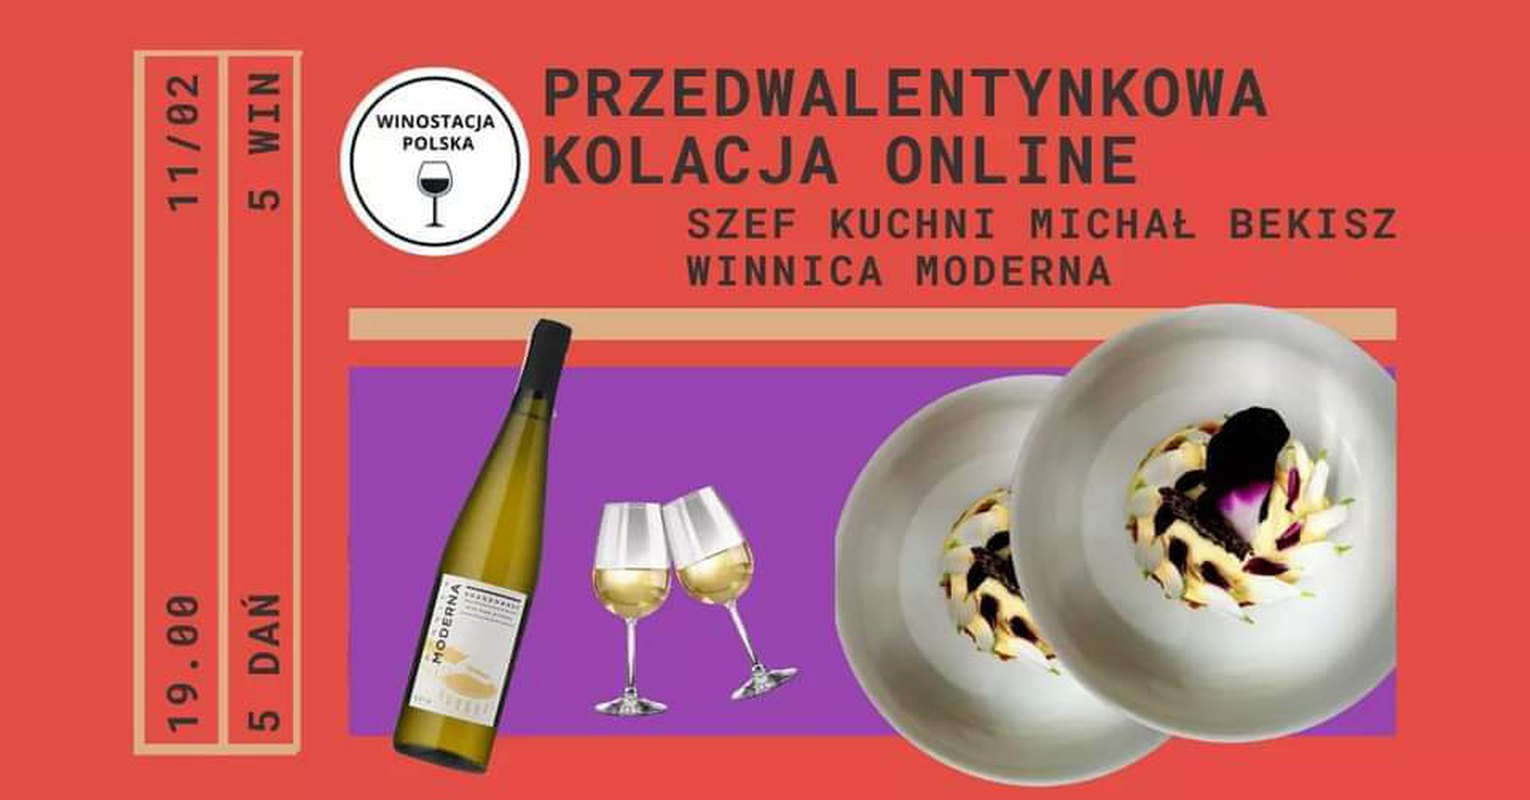 Kolacja i wino online. Michał Bekisz x Winnica Moderna